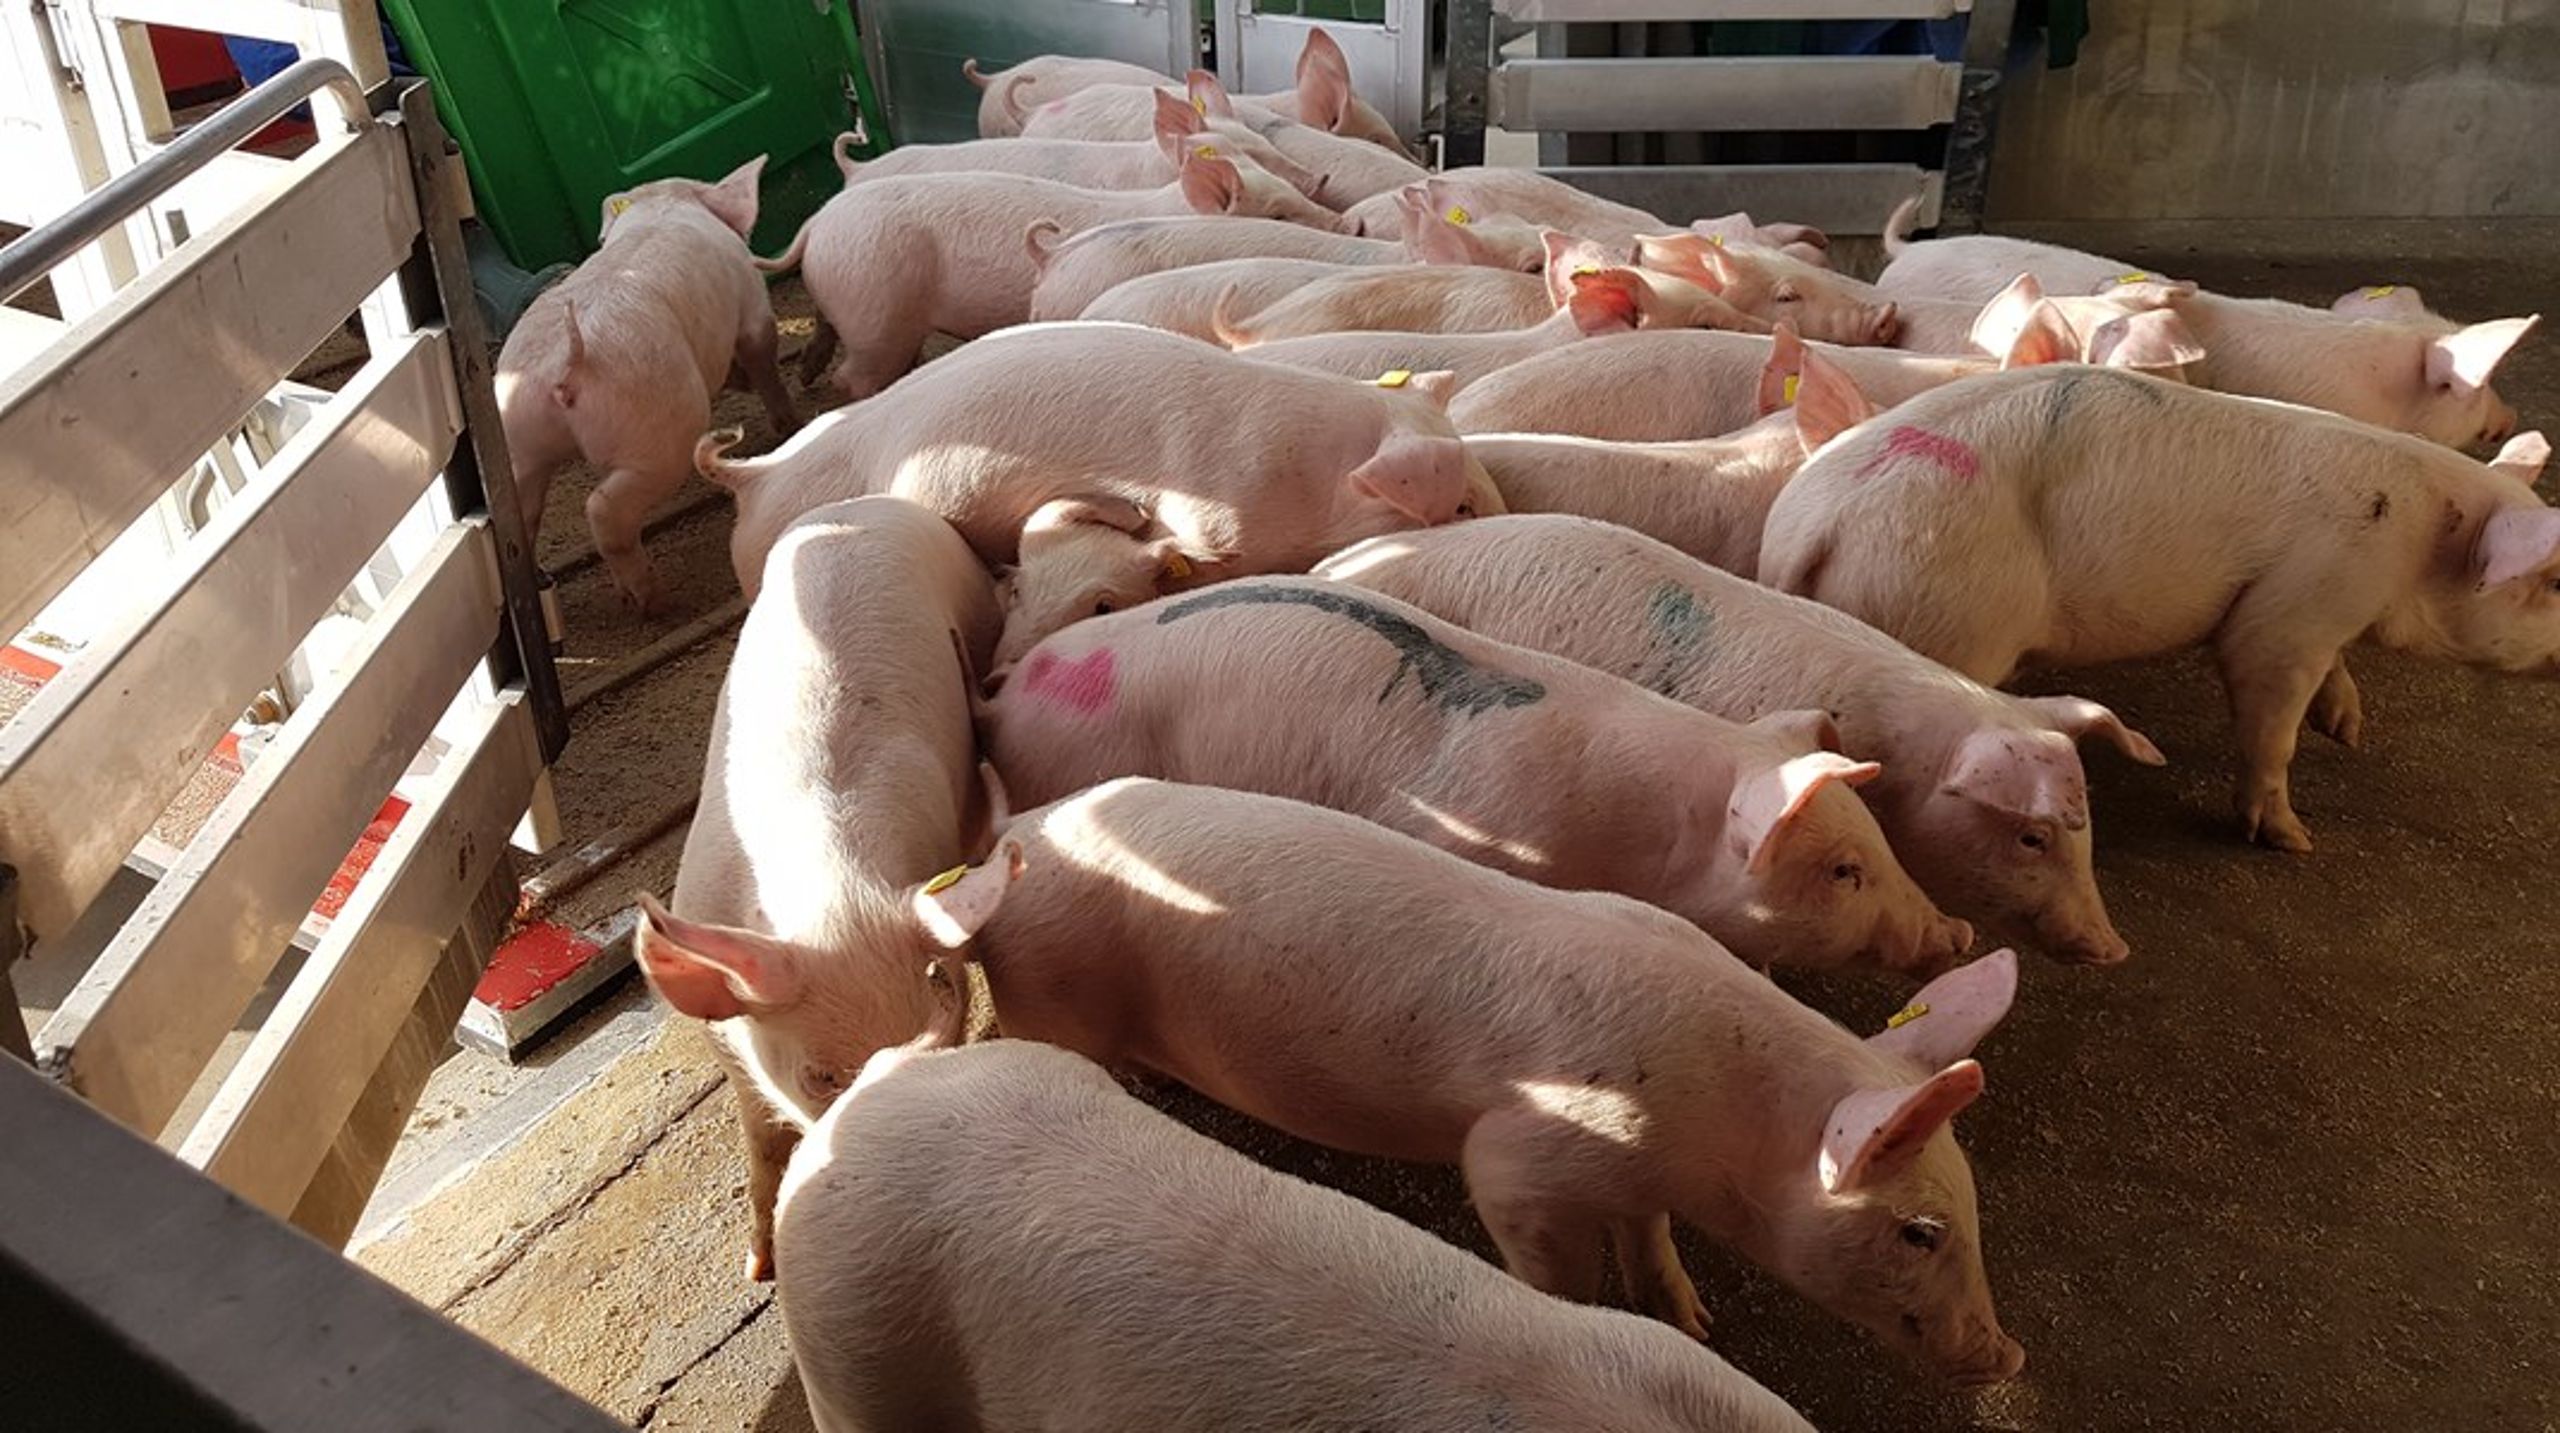 Hvis man ønsker at vedblive med at transportere svin over lange afstande, så er der derfor brug for mere viden om, hvorvidt en pause overhovedet er gavnlig for dyrene, når alle faktorer regnes med, skriver to forskere fra Aarhus Universitet.